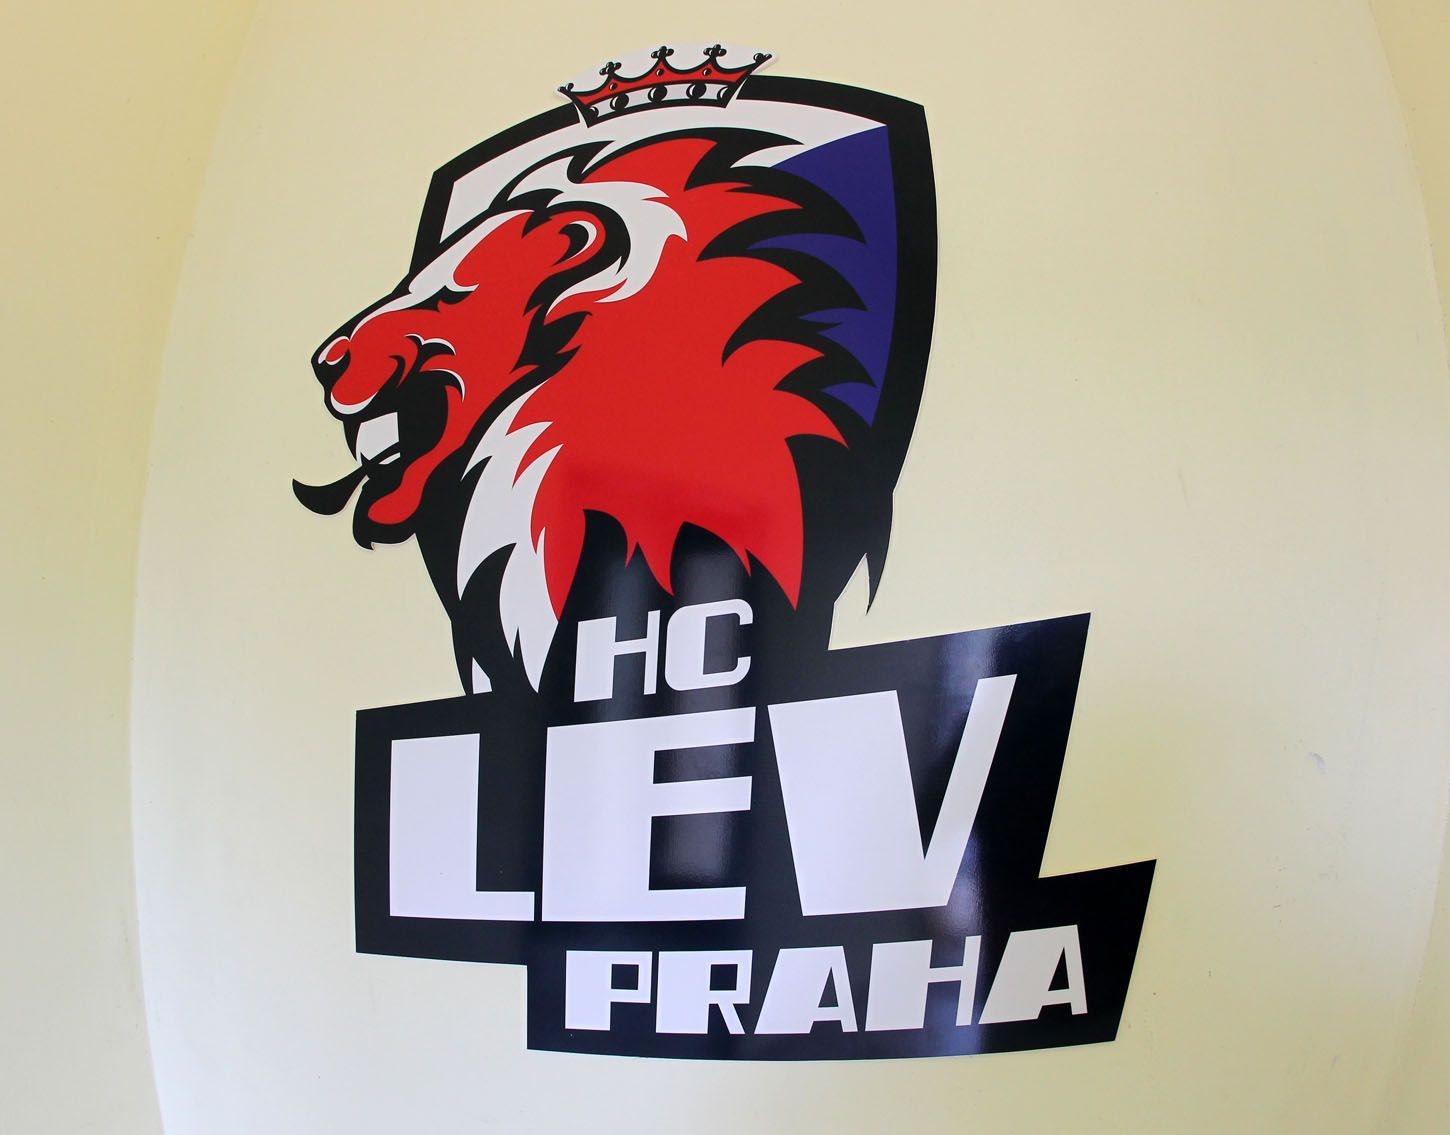 Tipsport Arena Praha - zázemí klubu HC LEV Praha před sezónou 2012/13.